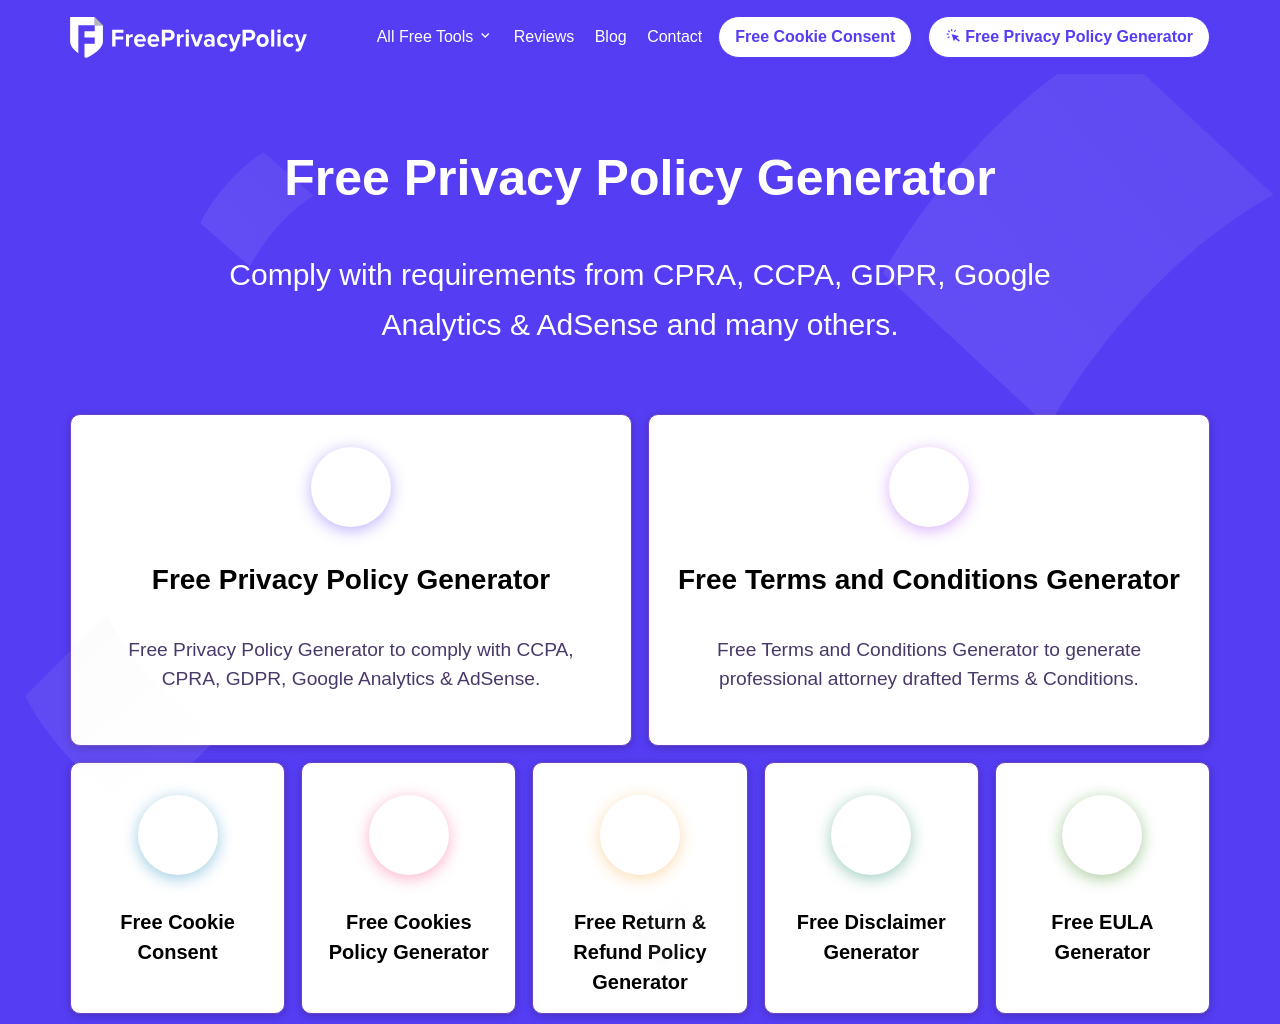 freeprivacypolicy.com